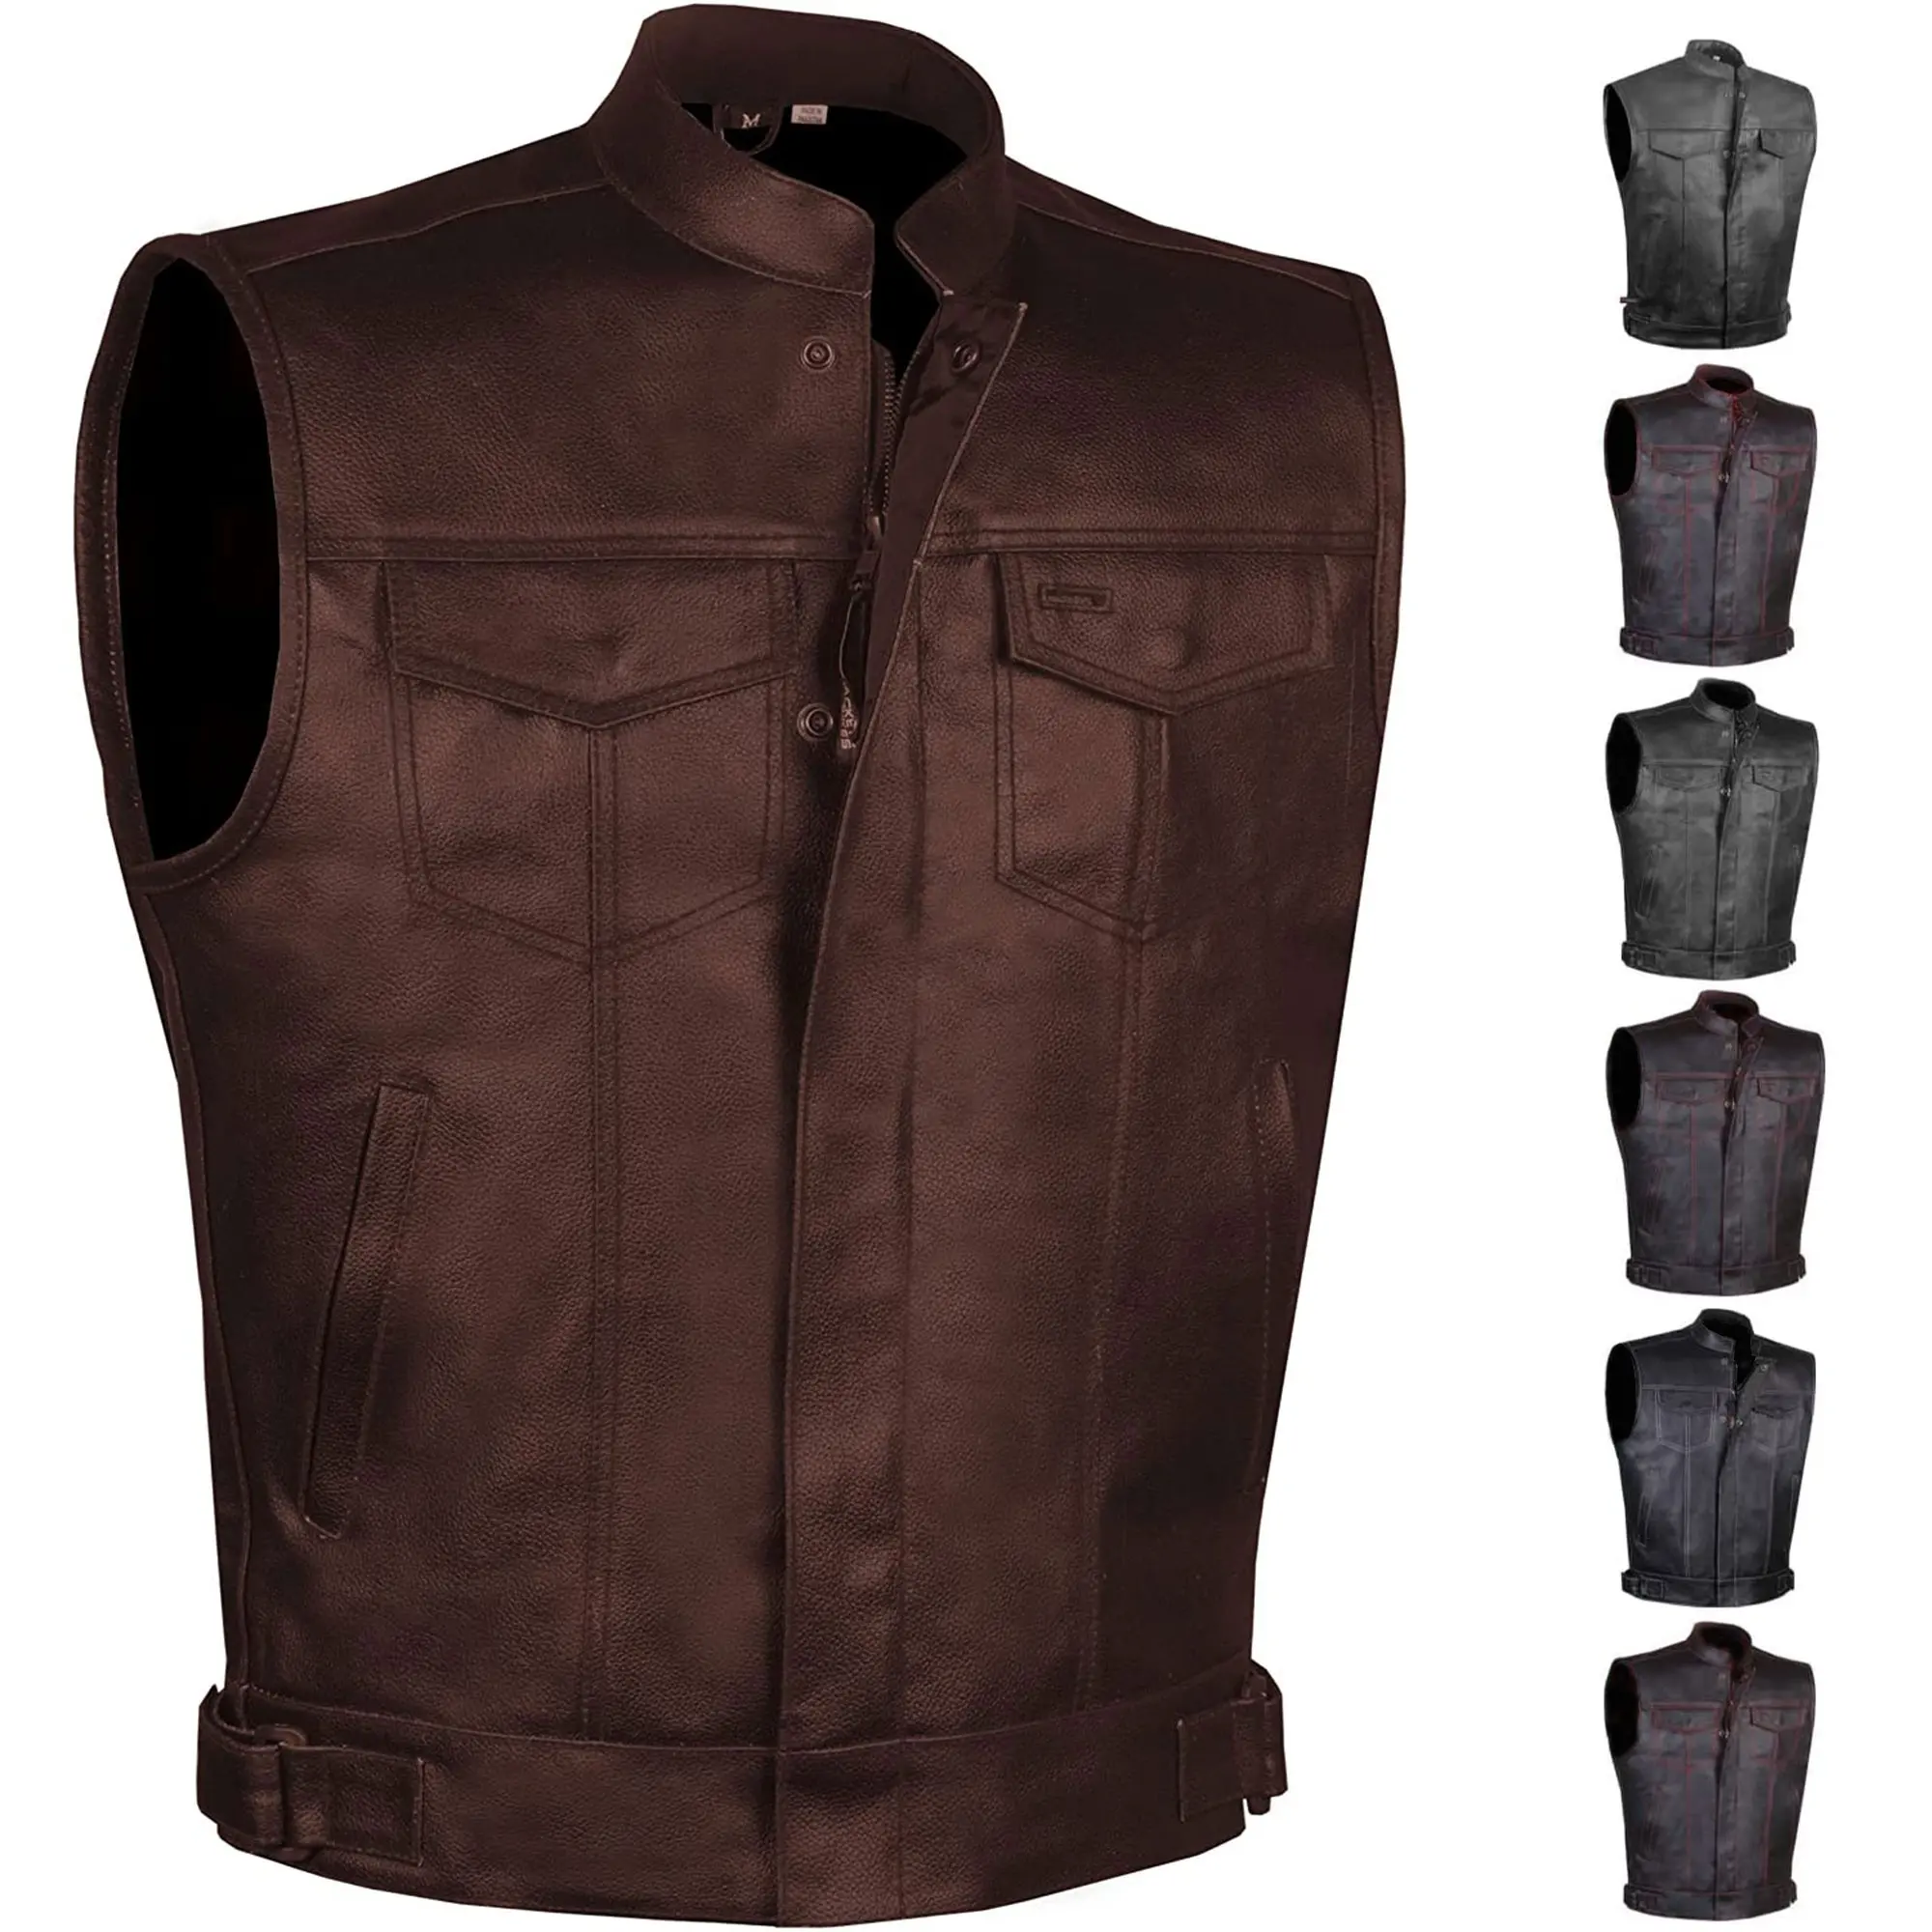 100% Genuine Leather for Men & Women Biker Leather Vest Motorcycle Leather Vest Concealed Carry Vest